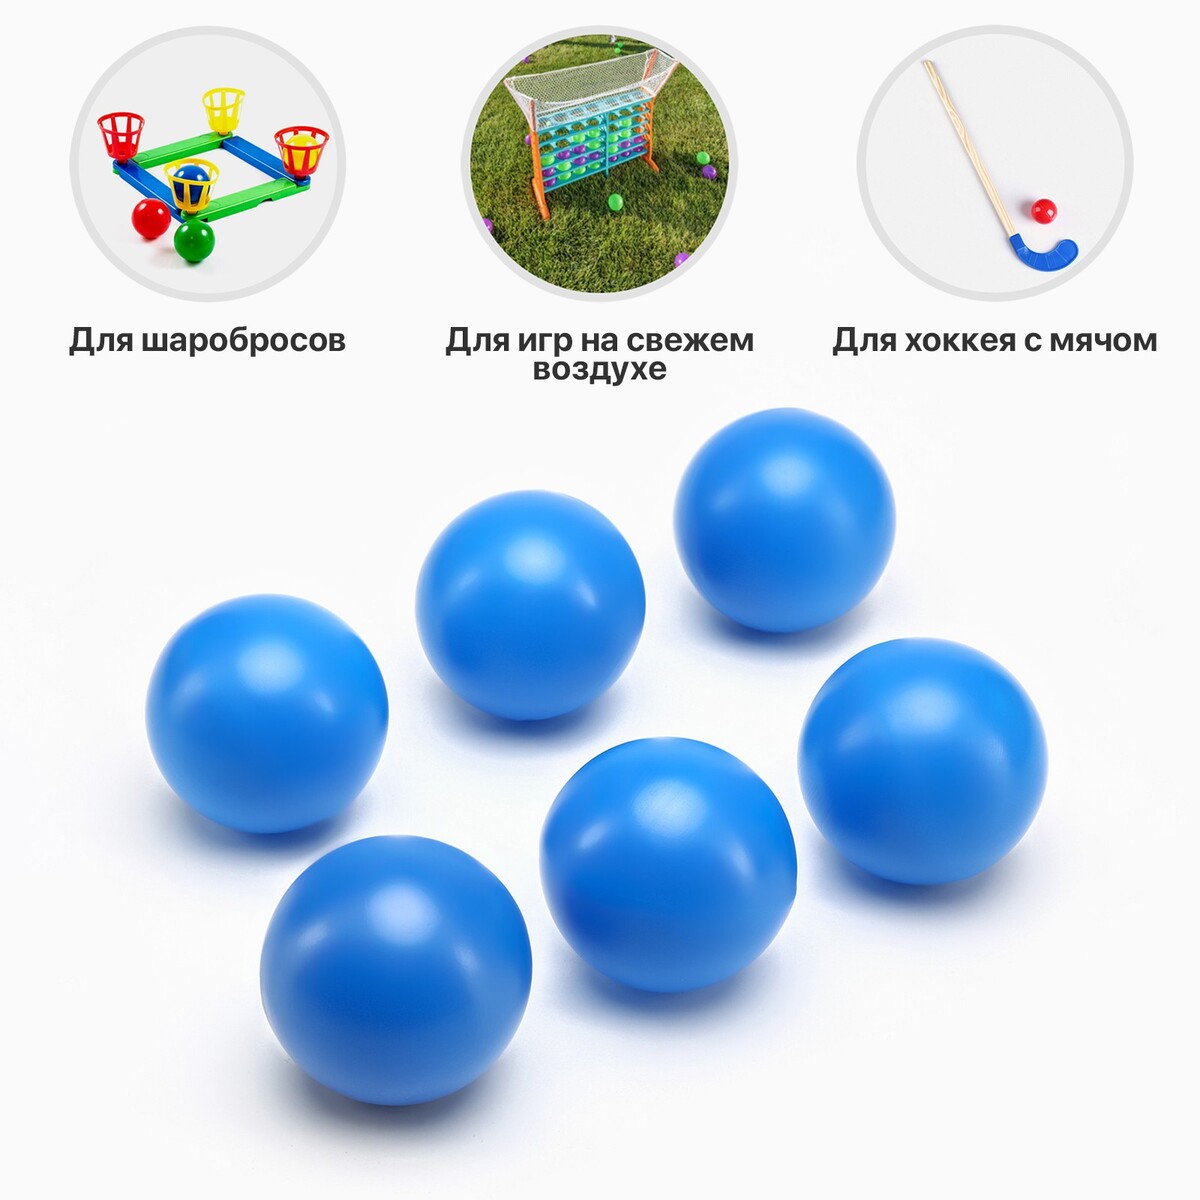 Набор мячей для садовых игр, хоккея, 6 шт, d-7 см набор мячей для большого тенниса werkon 929 в тубе 3 шт